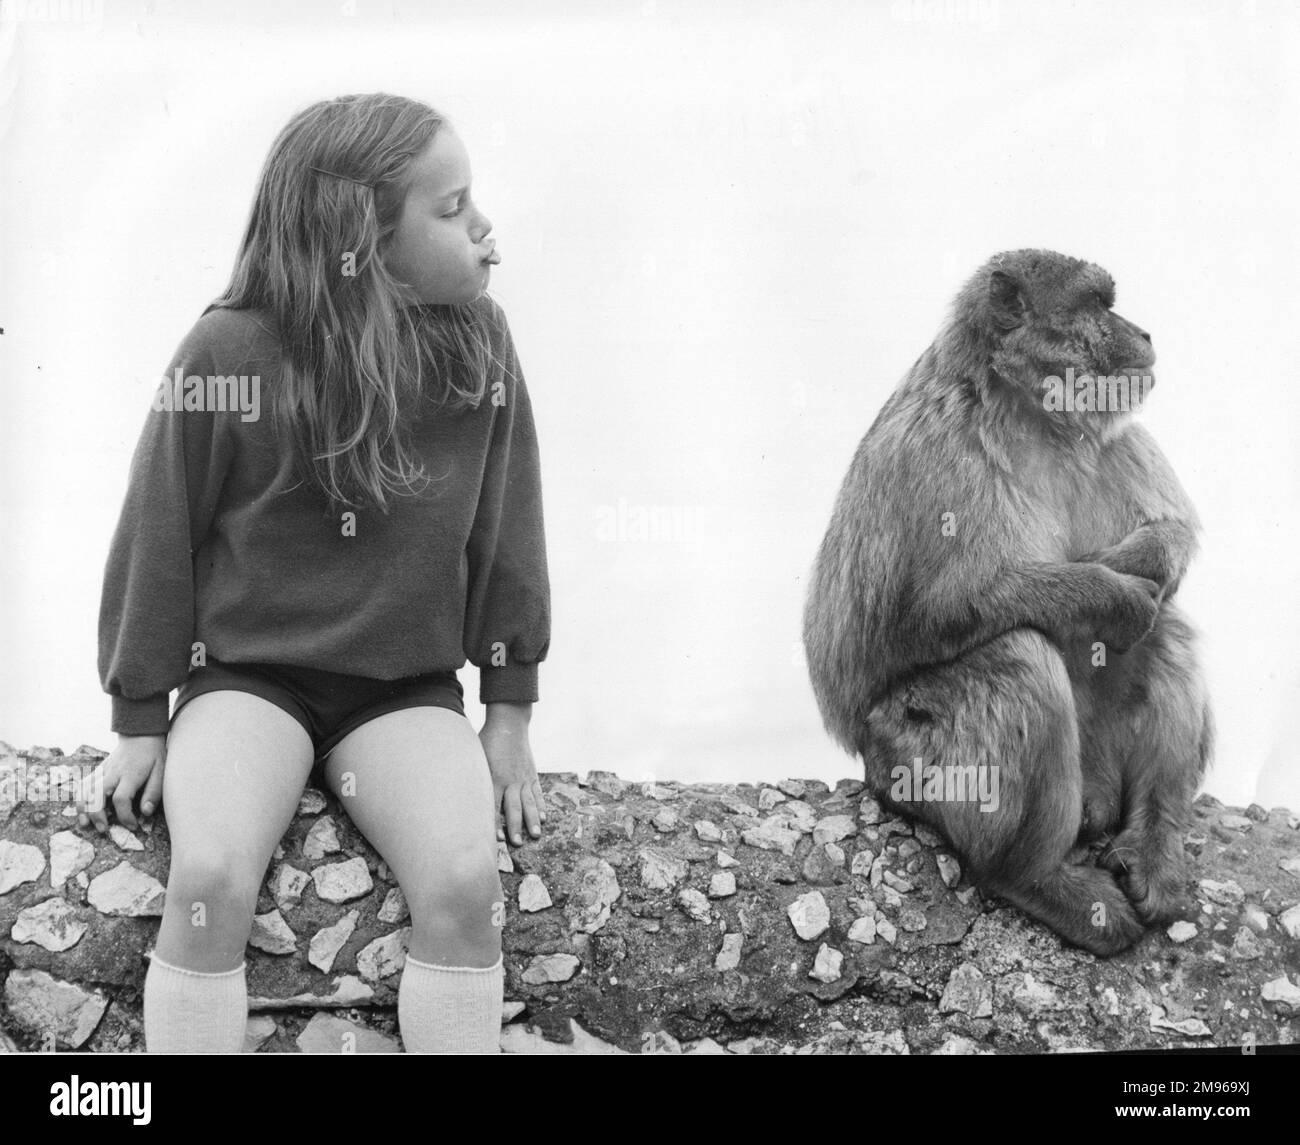 Una niña sentada al lado de un Macaco de Barbero de Gibraltar (Macaca Sylvanus), tratando de imitar sus gestos. Estos animales se encuentran en la Roca Alta de Gibraltar, y son conocidos localmente como simios de Berbería o simios de roca, aunque en realidad son monos en lugar de simios. Foto de stock